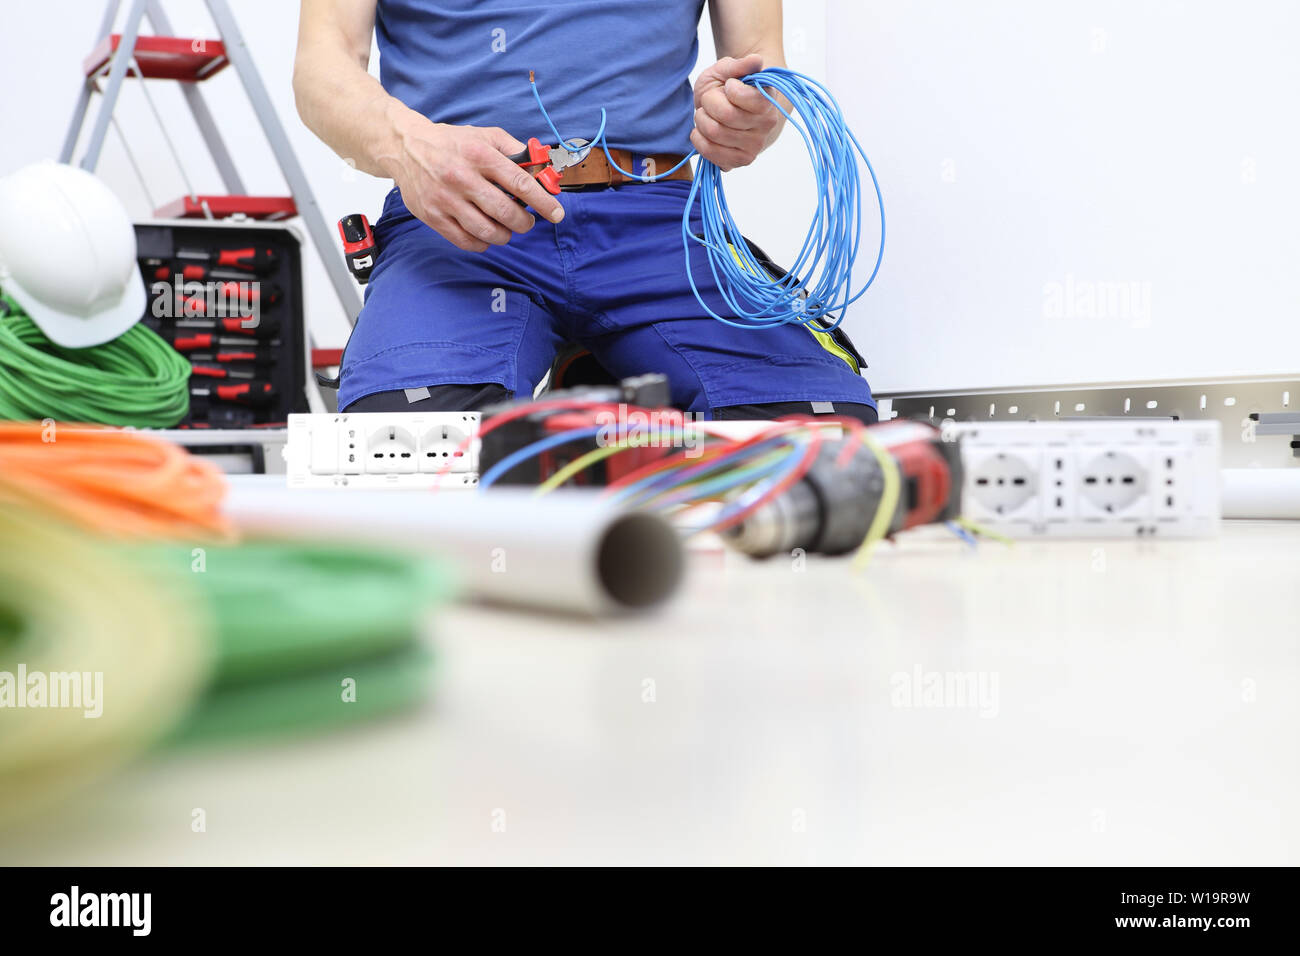 Elektriker bei der Arbeit mit Zange in der Hand schneiden Sie die  elektrischen Kabel, Einbau der elektrischen Stromkreise, elektrische  Verkabelung Stockfotografie - Alamy